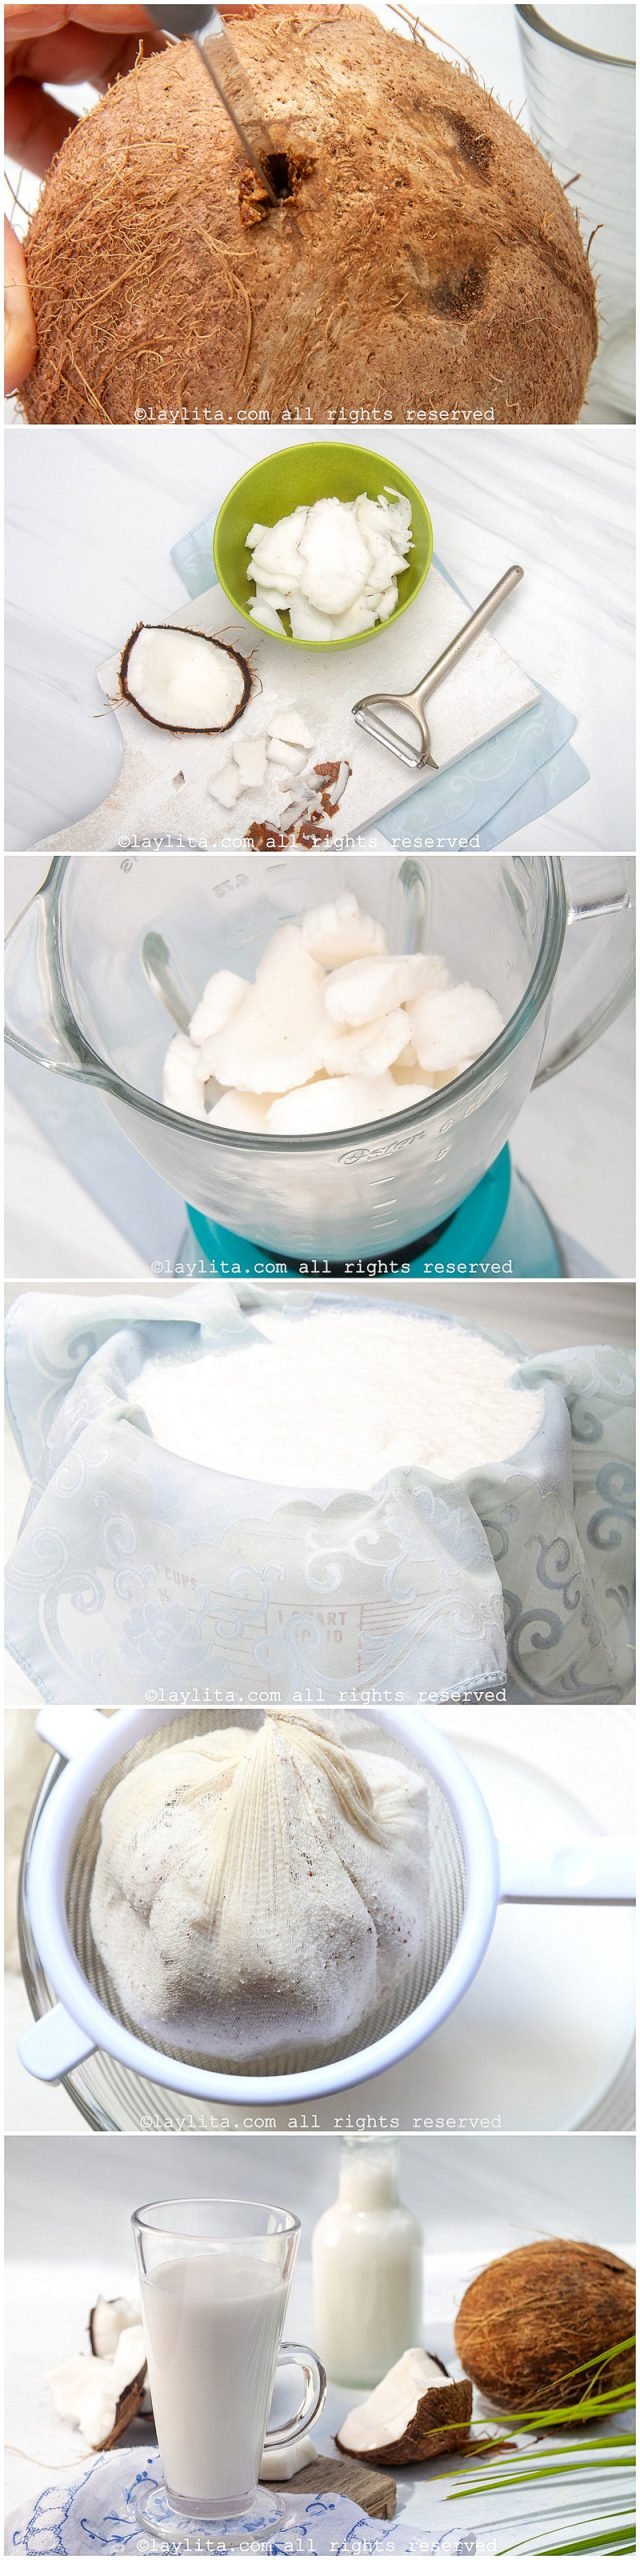 Fotos paso a paso de la preparación de la leche de coco casera